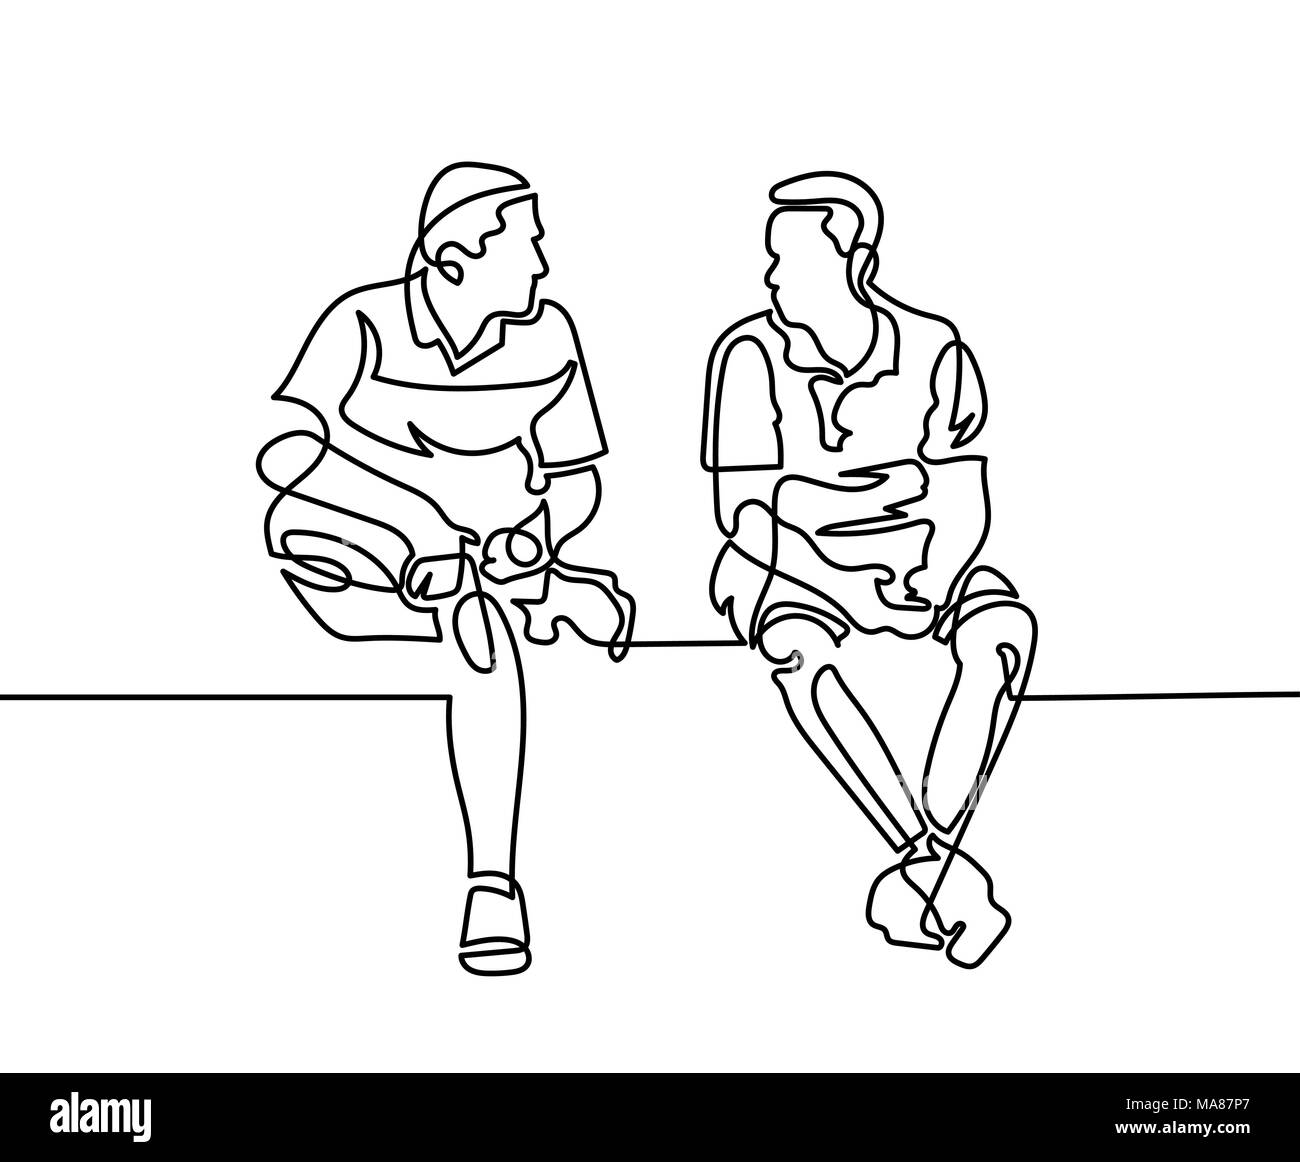 Une ligne continue de dessiner deux hommes s'asseoir et parler Illustration de Vecteur